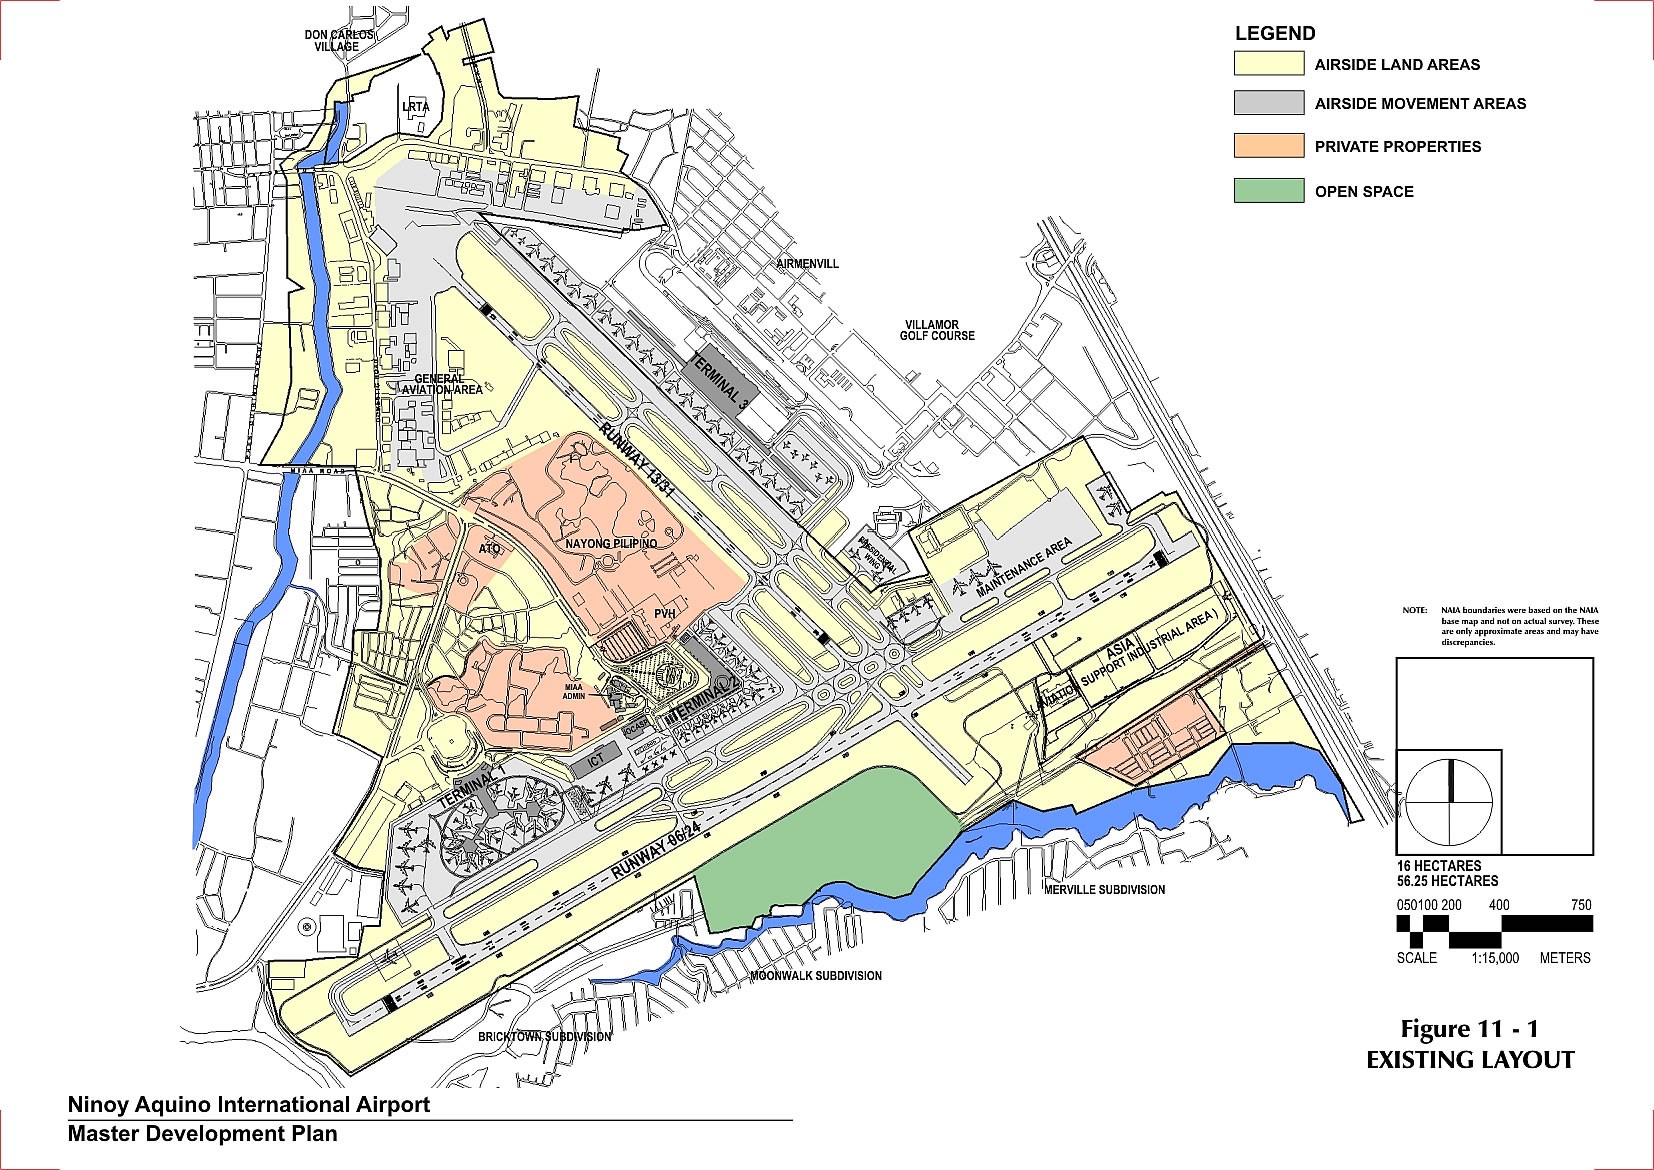 Ninoy Aquino International Airport Master Development Plan